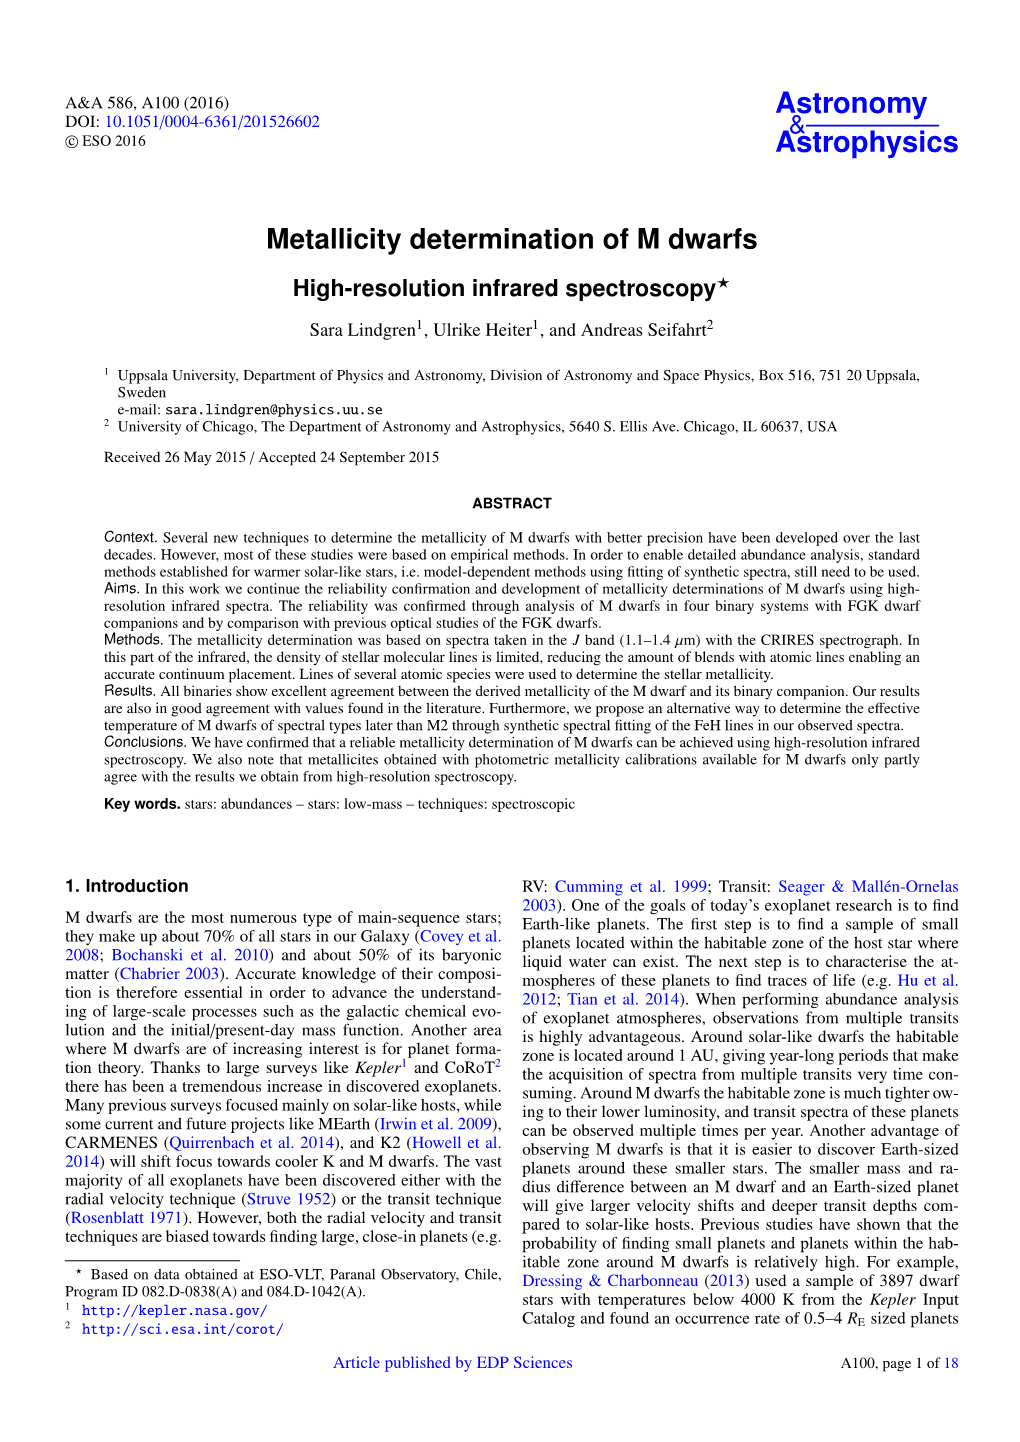 Metallicity Determination of M Dwarfs High-Resolution Infrared Spectroscopy?